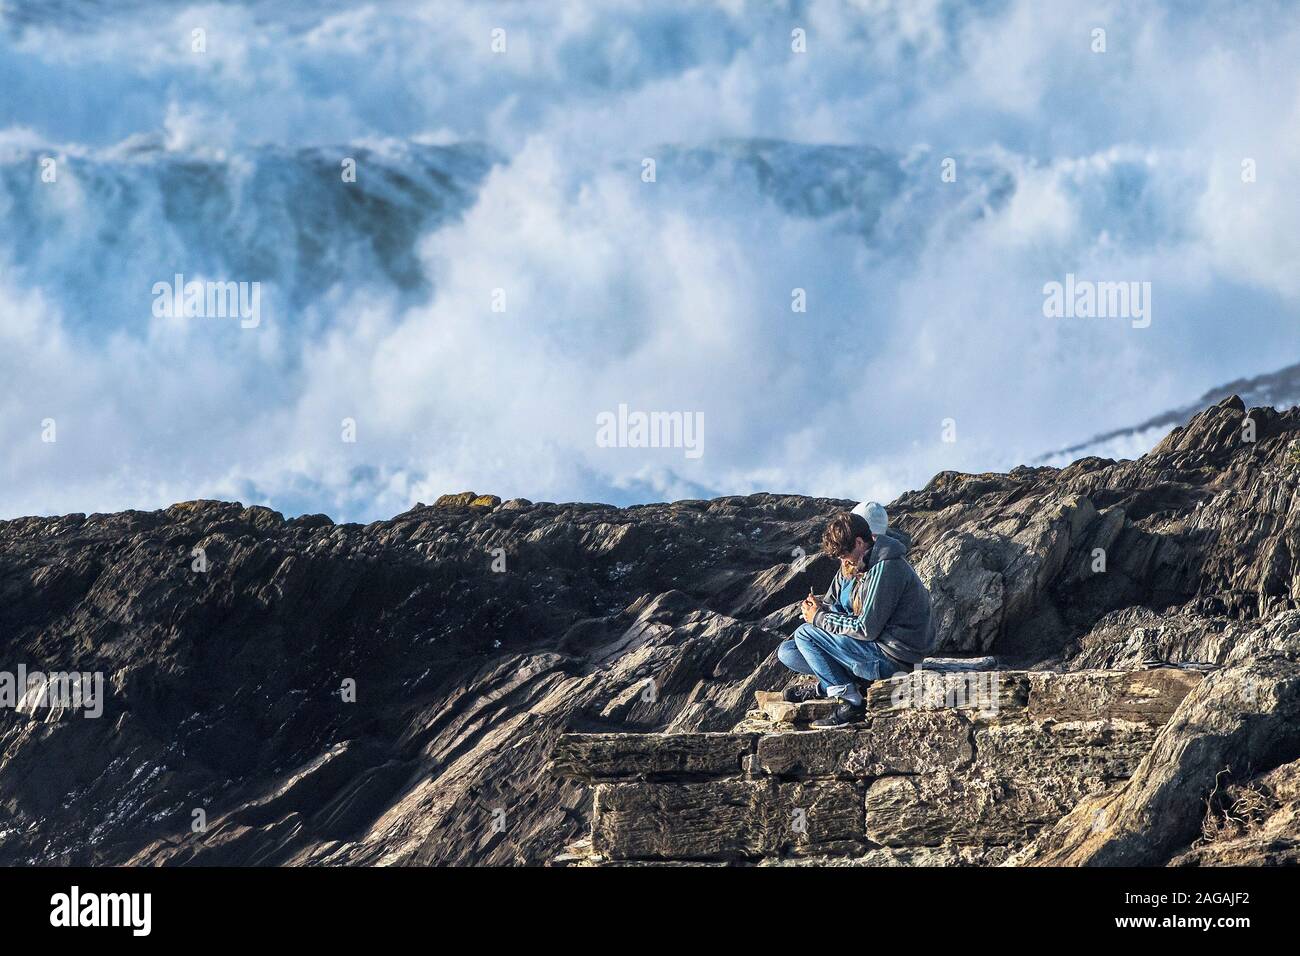 Deux jeunes gens assis dans une position dangereuse sur rochers, gros des vagues de tempête pause au fond à tête de Towan à Newquay en Cornouailles. Banque D'Images